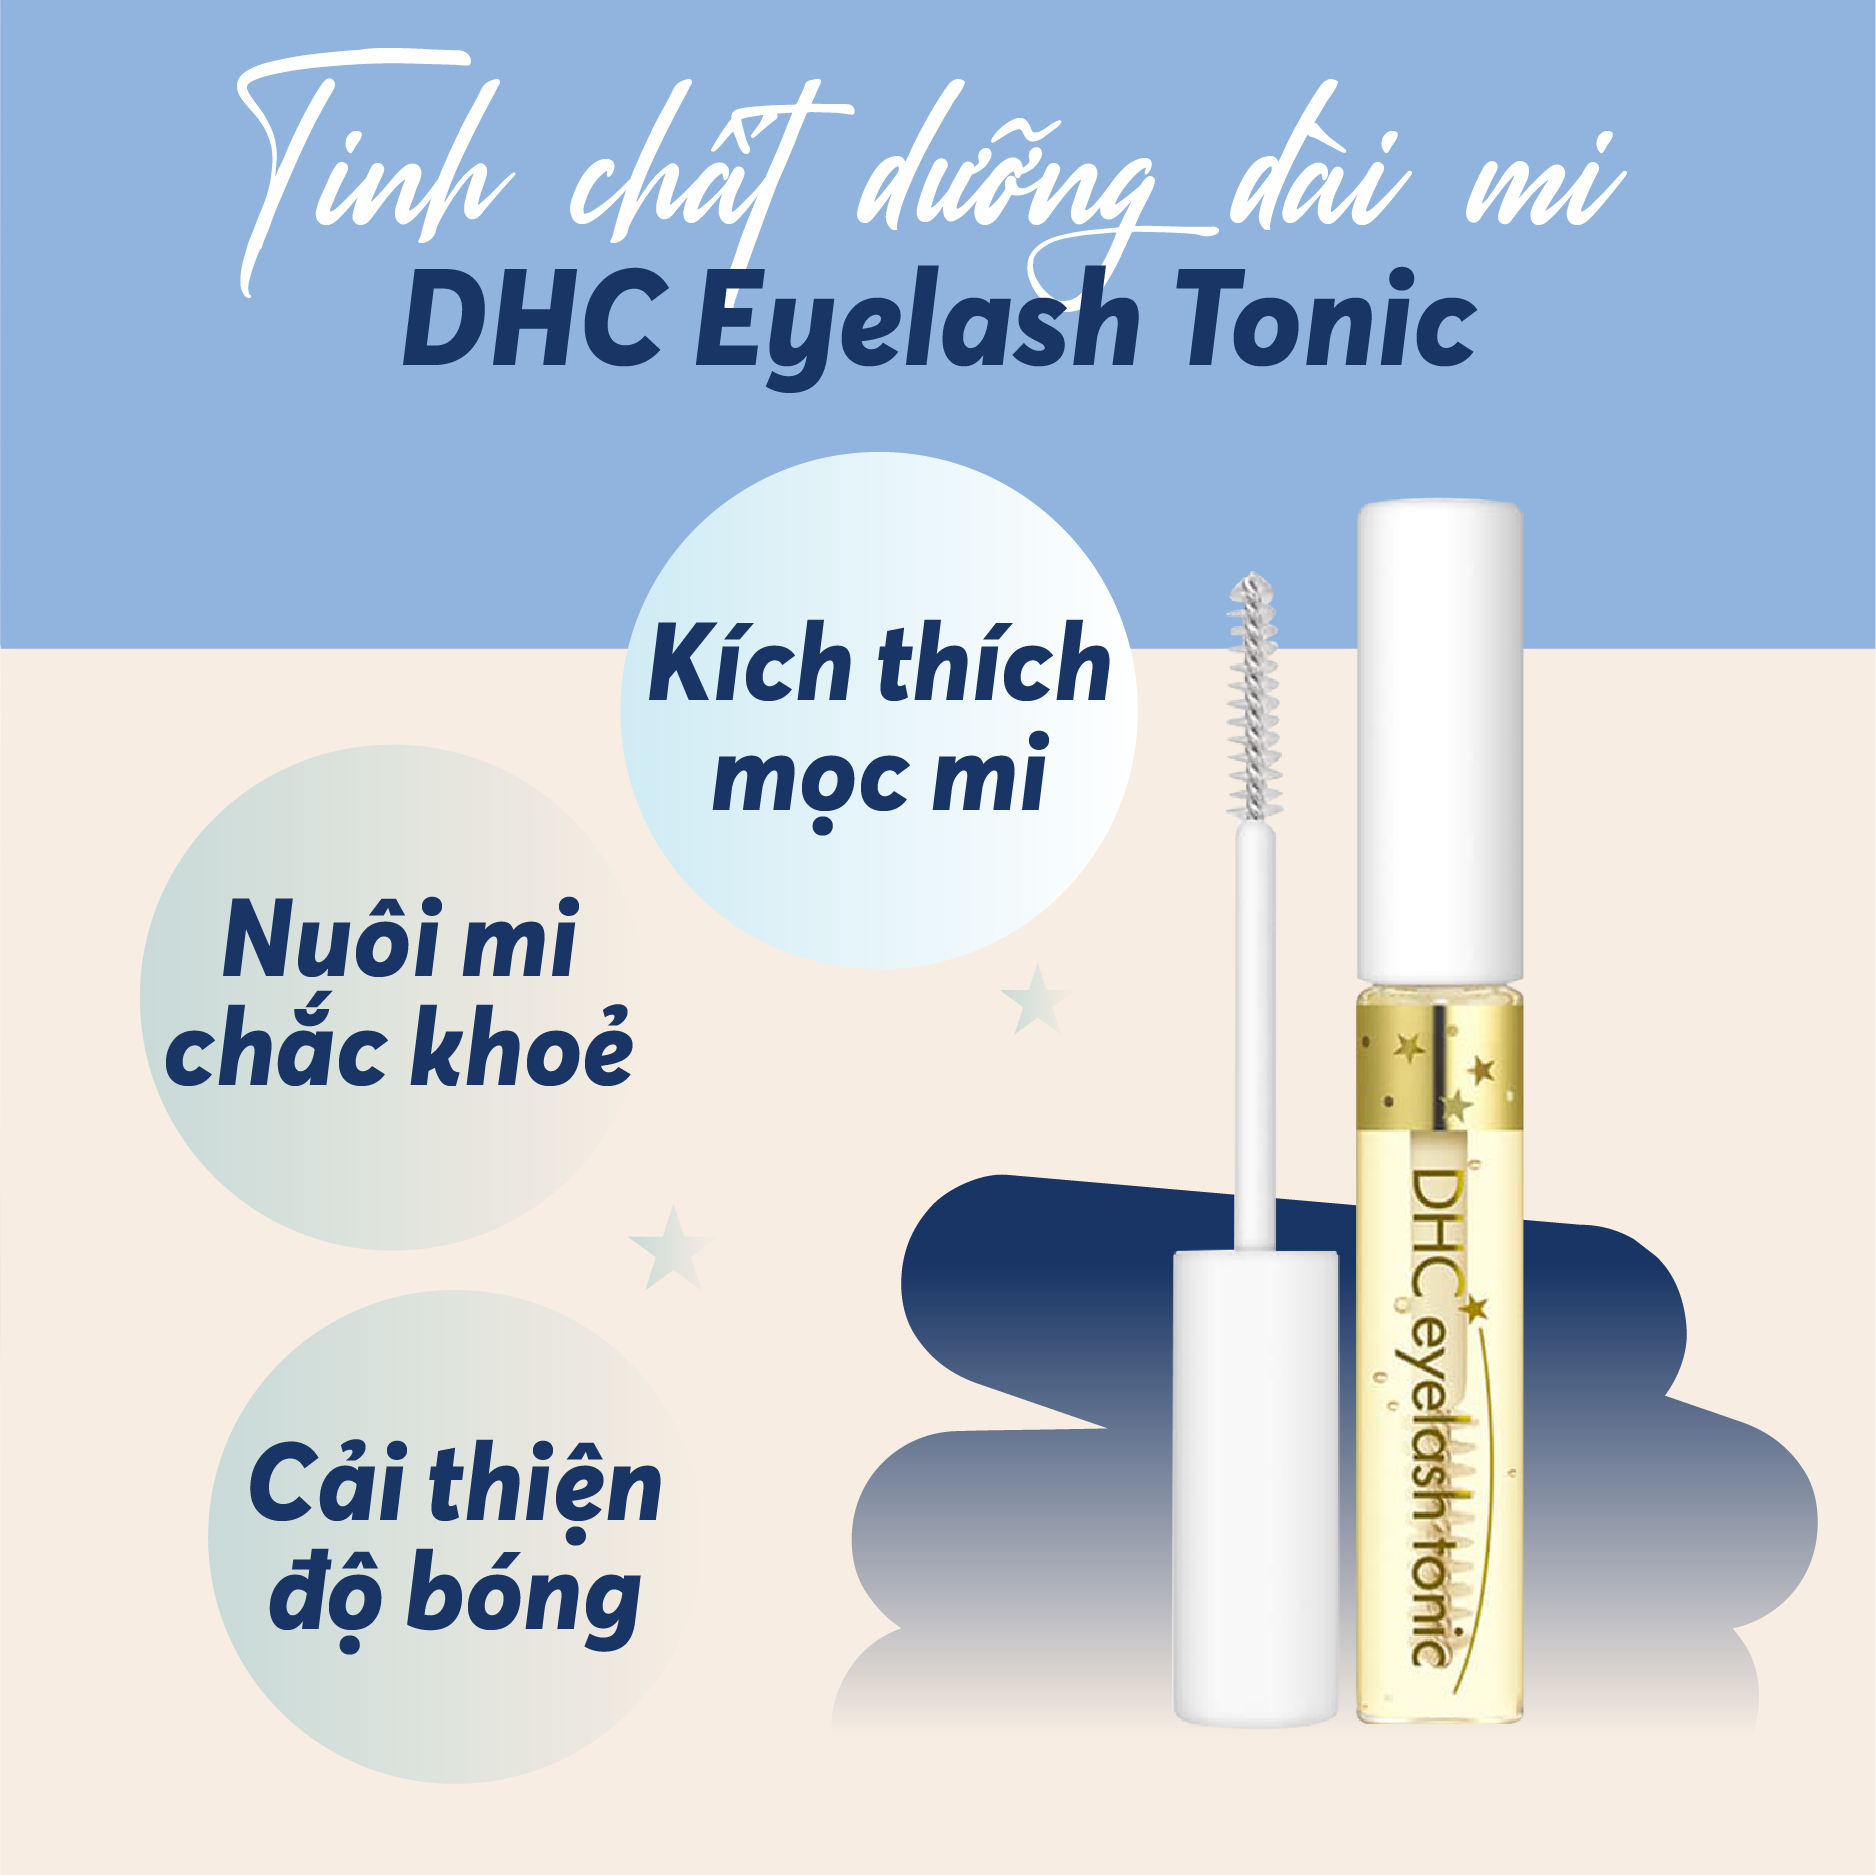 Dưỡng mi DHC Eyelash Tonic hỗ trợ kích thích mọc mi, làm dày, dài và chắc khỏe  lông mi - chiết xuất 100% từ thiên nhiên - Massel Official